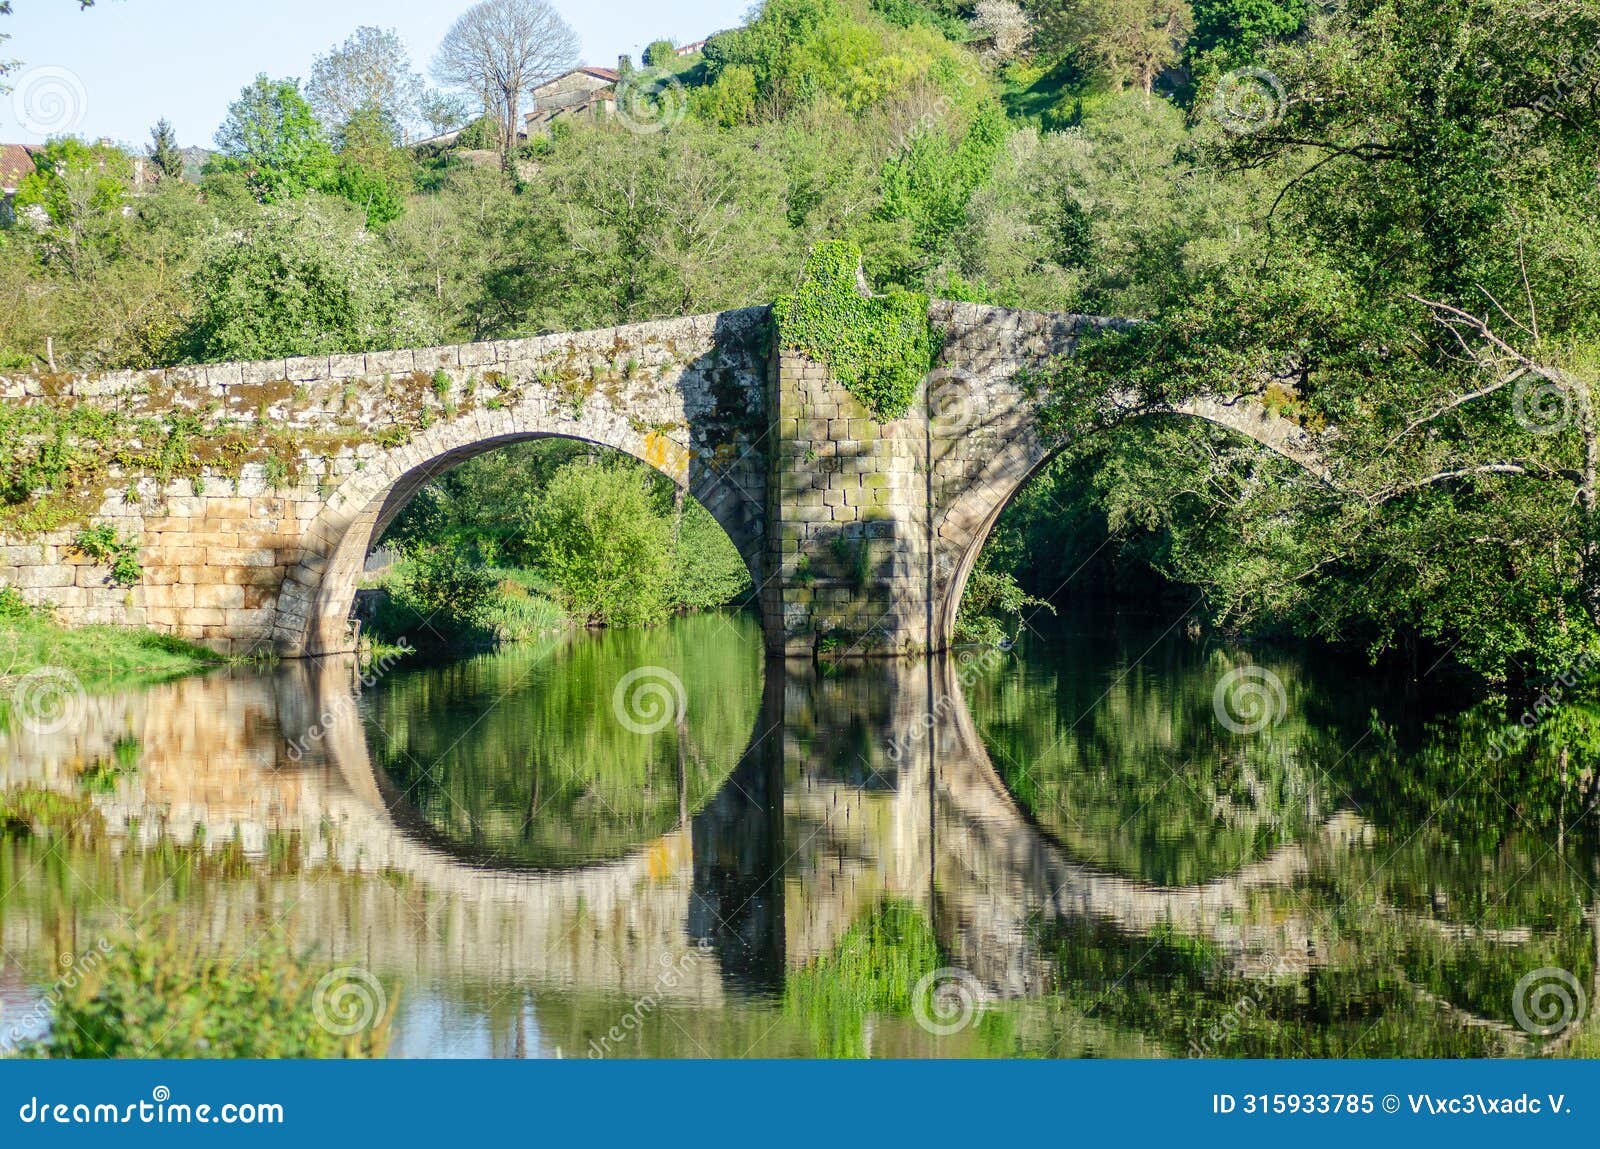 medieval stone bridge over the arnoia river in the beautiful village of allariz, galicia